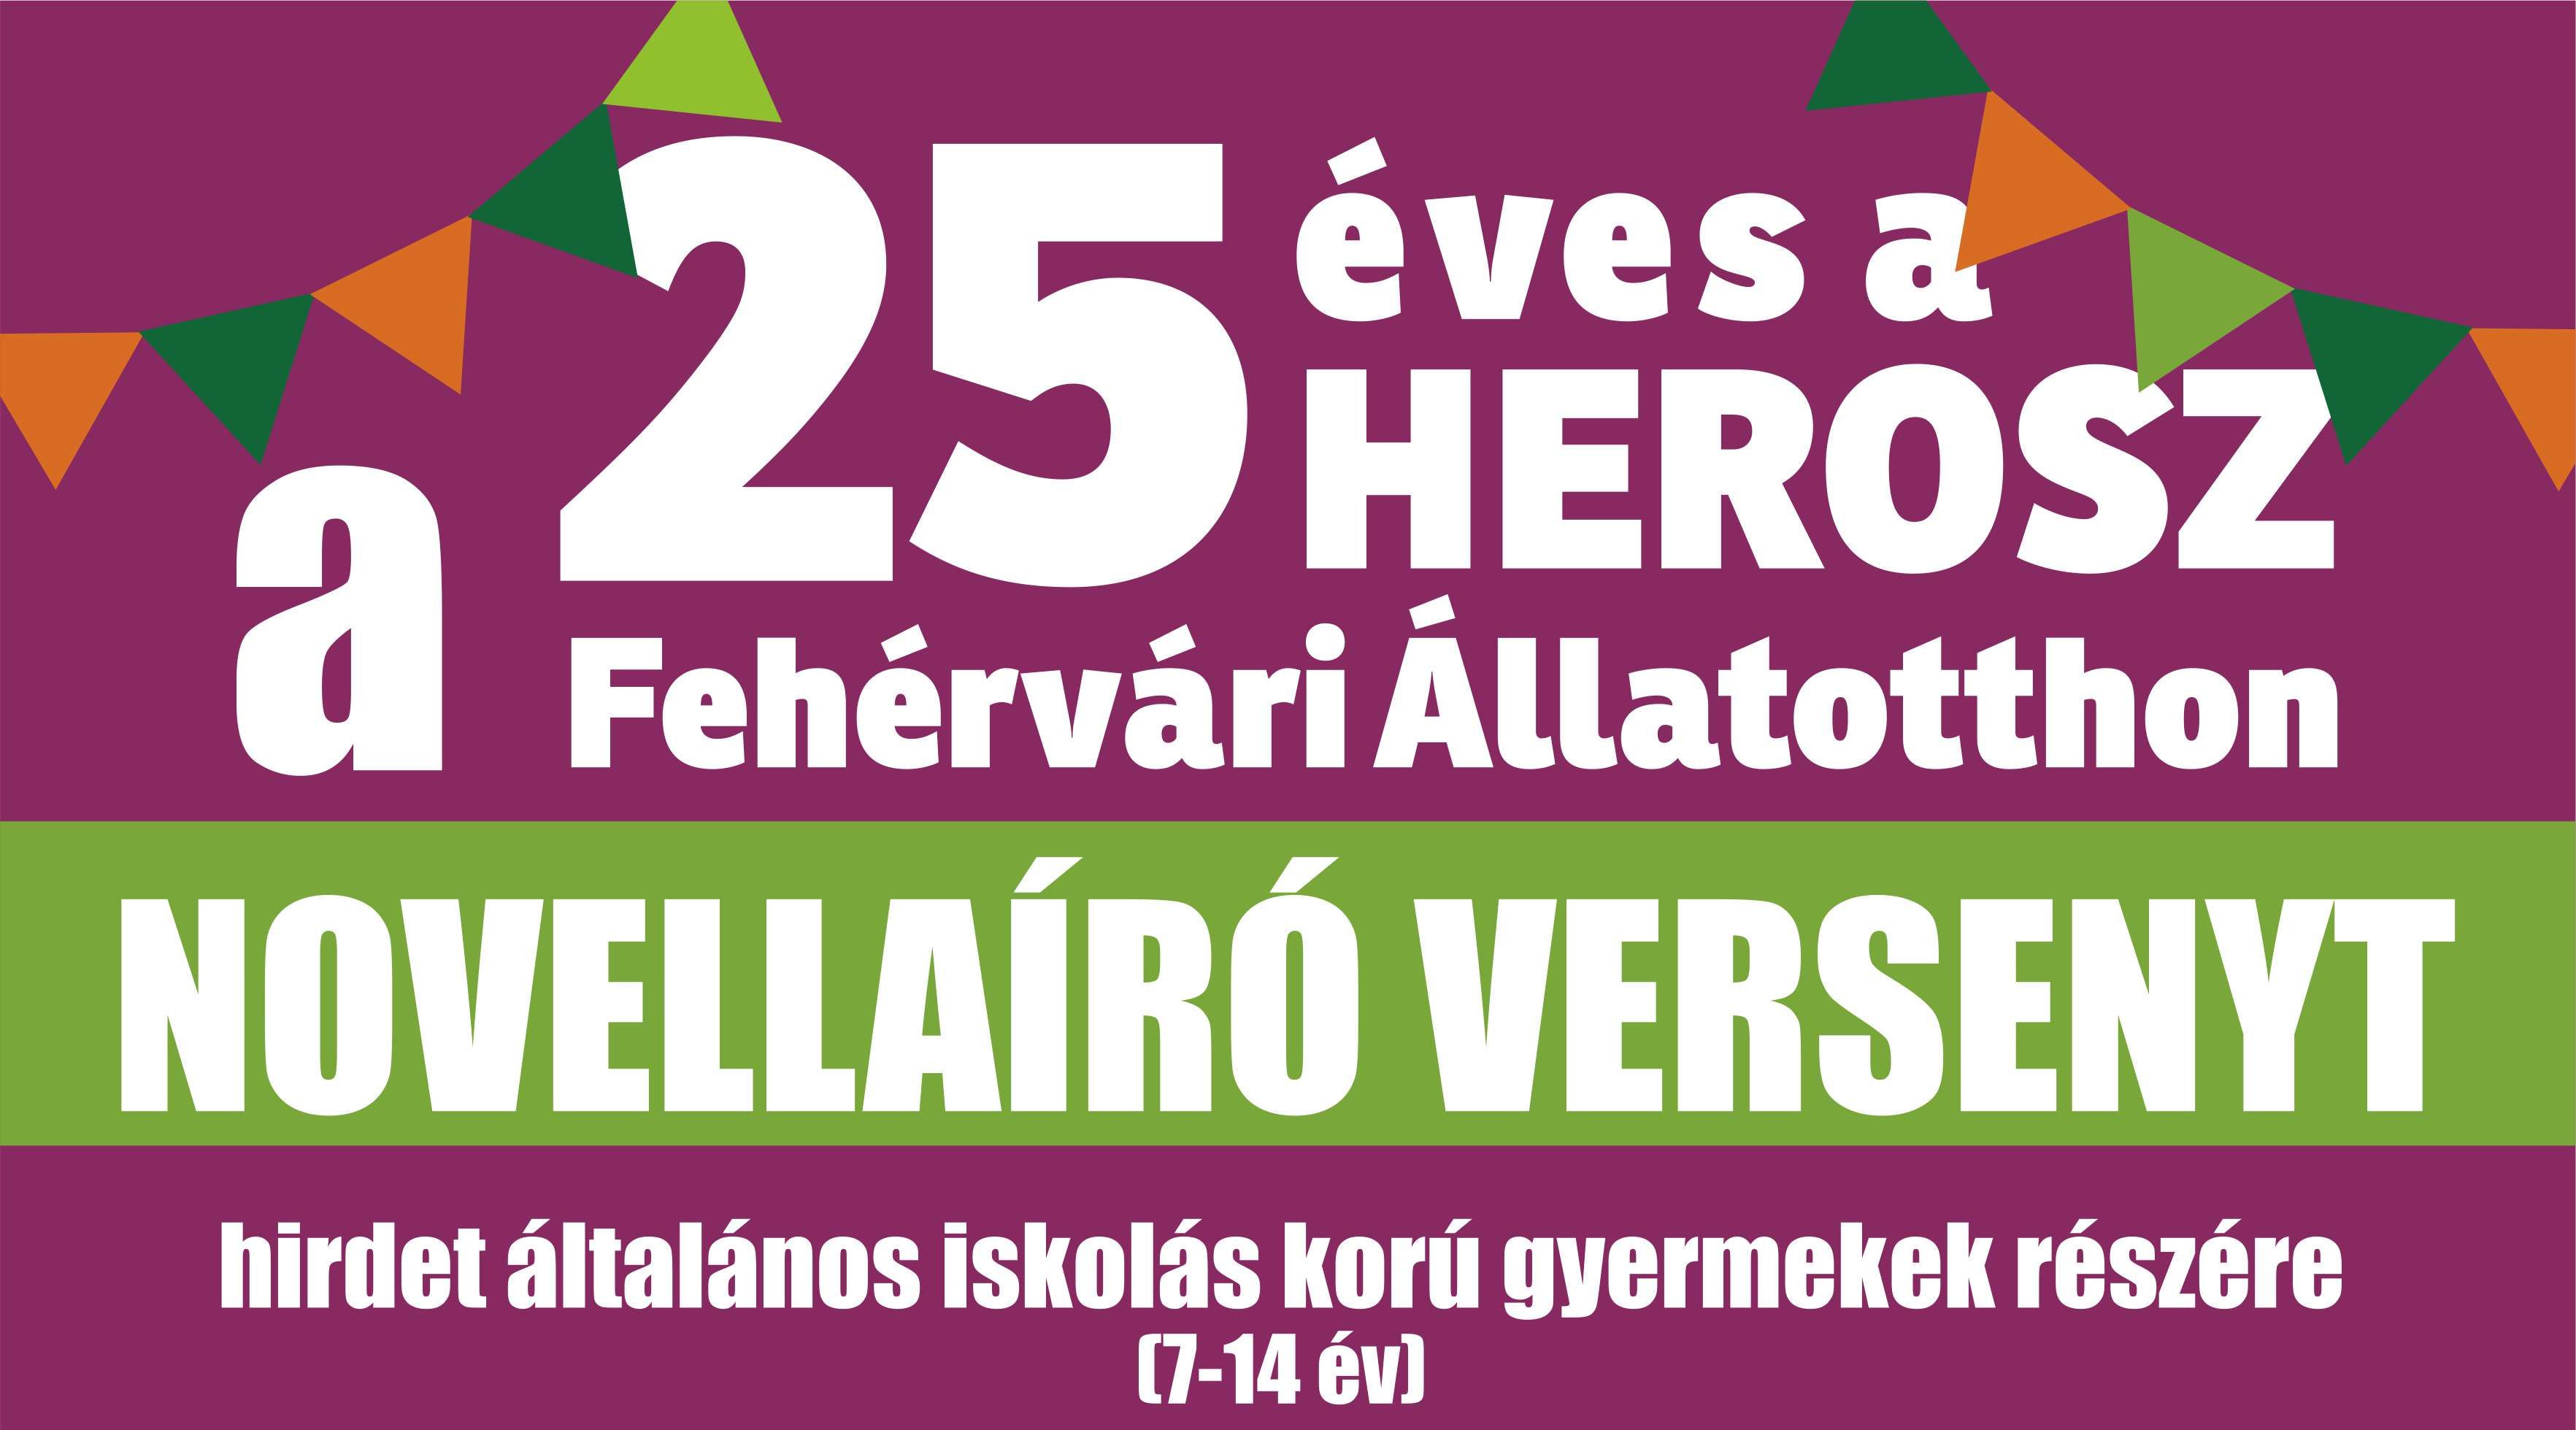 Irodalmi pályázatot hirdet a HEROSZ Fehérvári Állatotthona